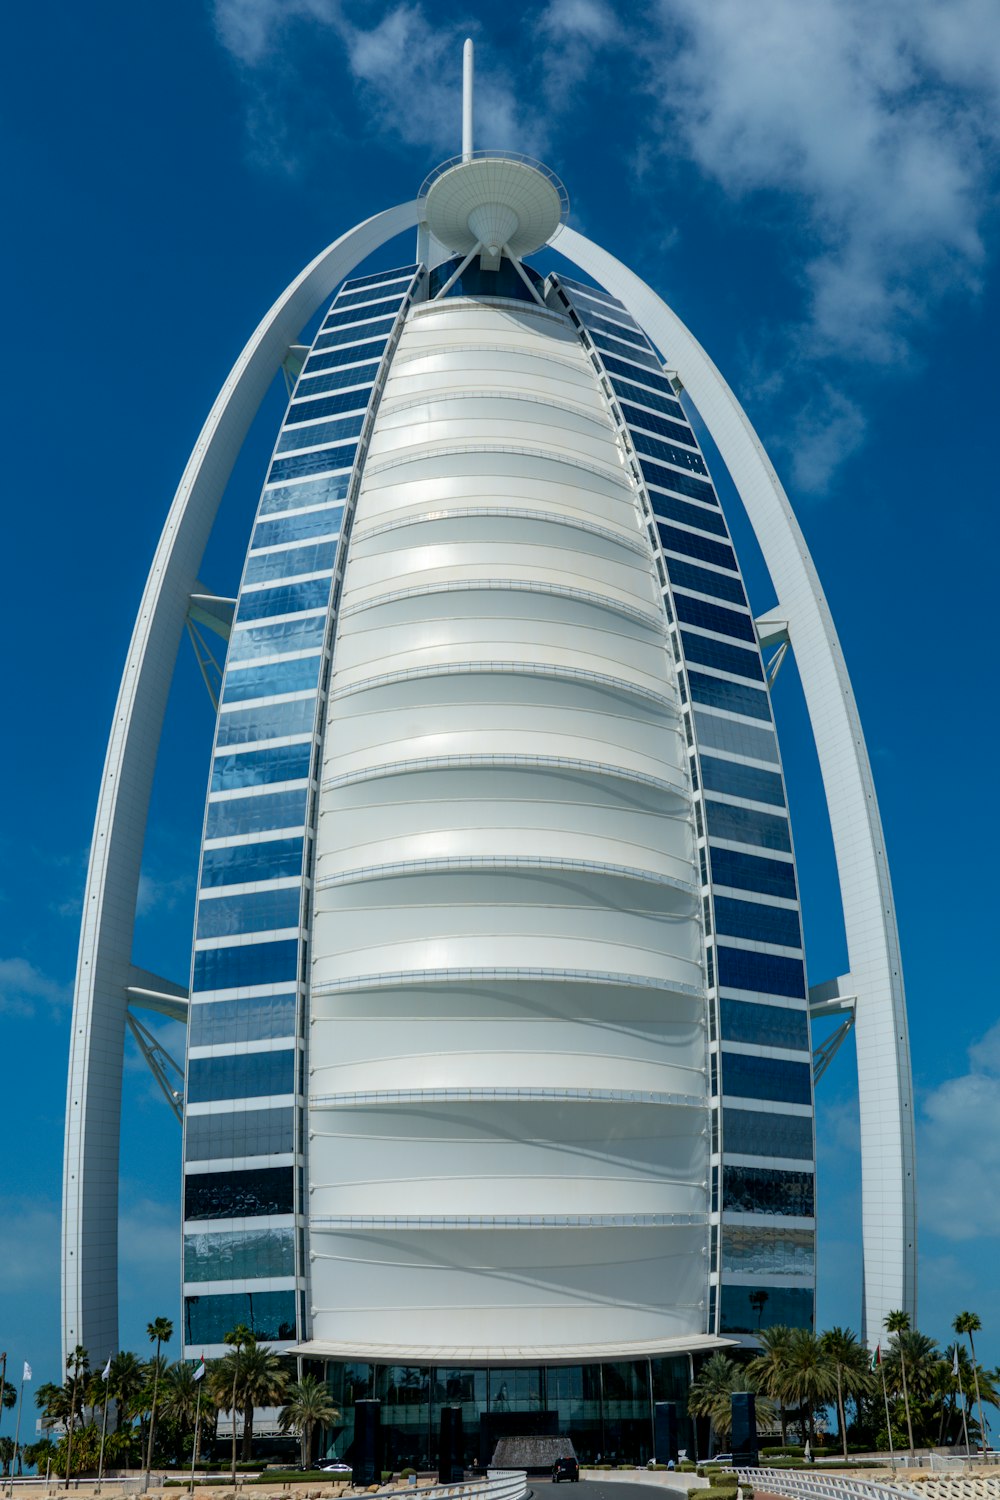 550+ Burj Al Arab Pictures | Download Free Images on Unsplash